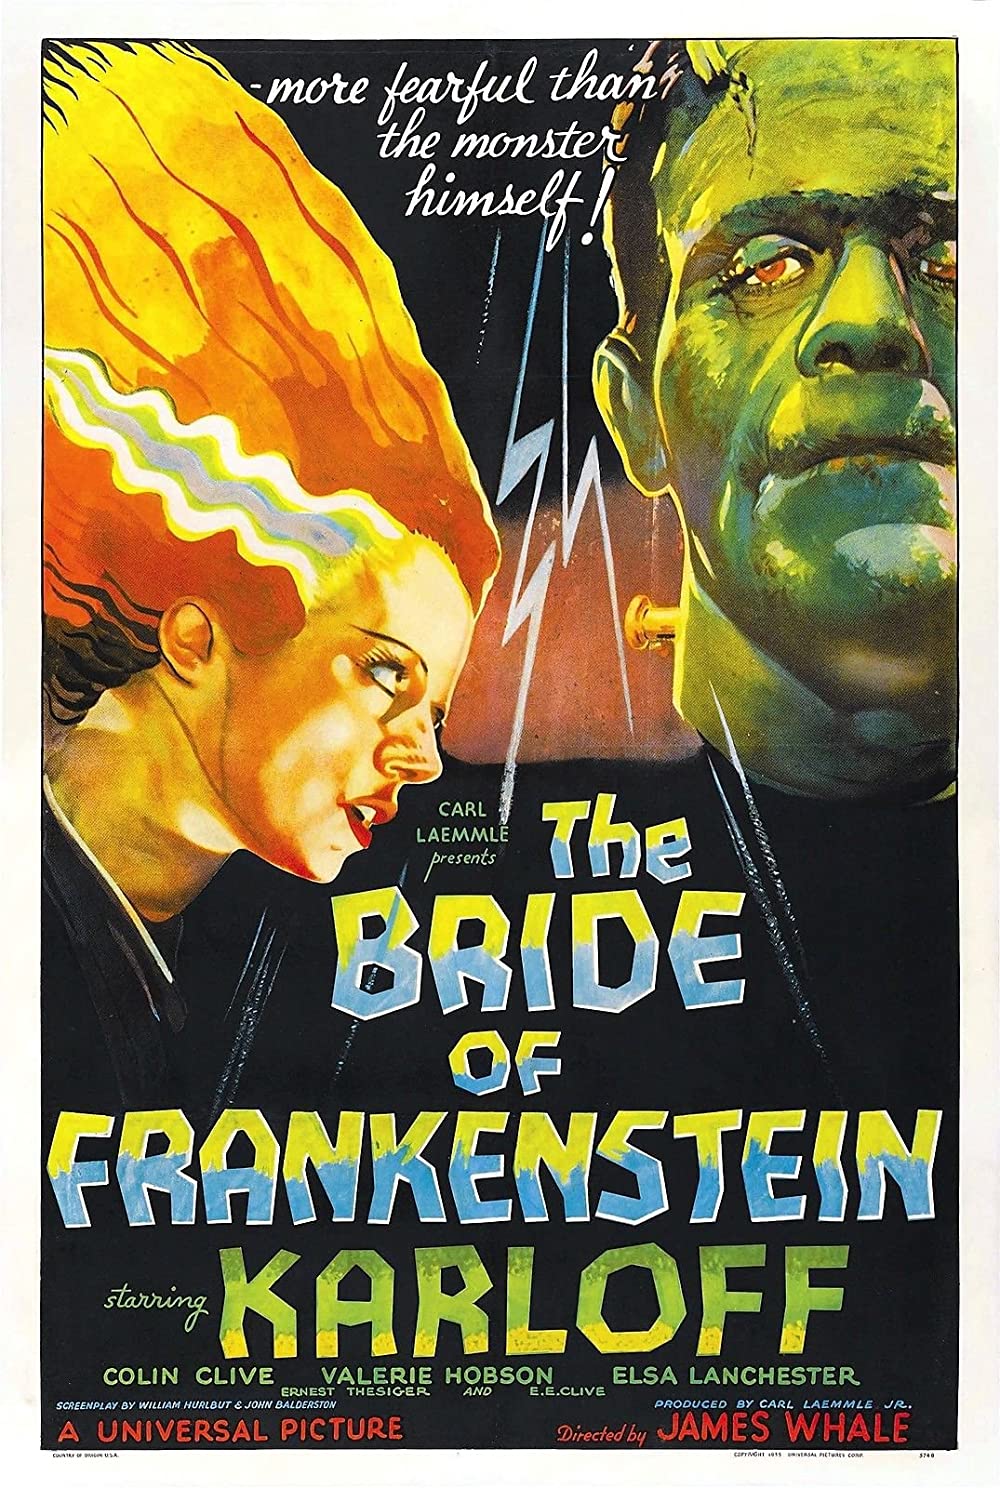 Filmbeschreibung zu Frankensteins Braut